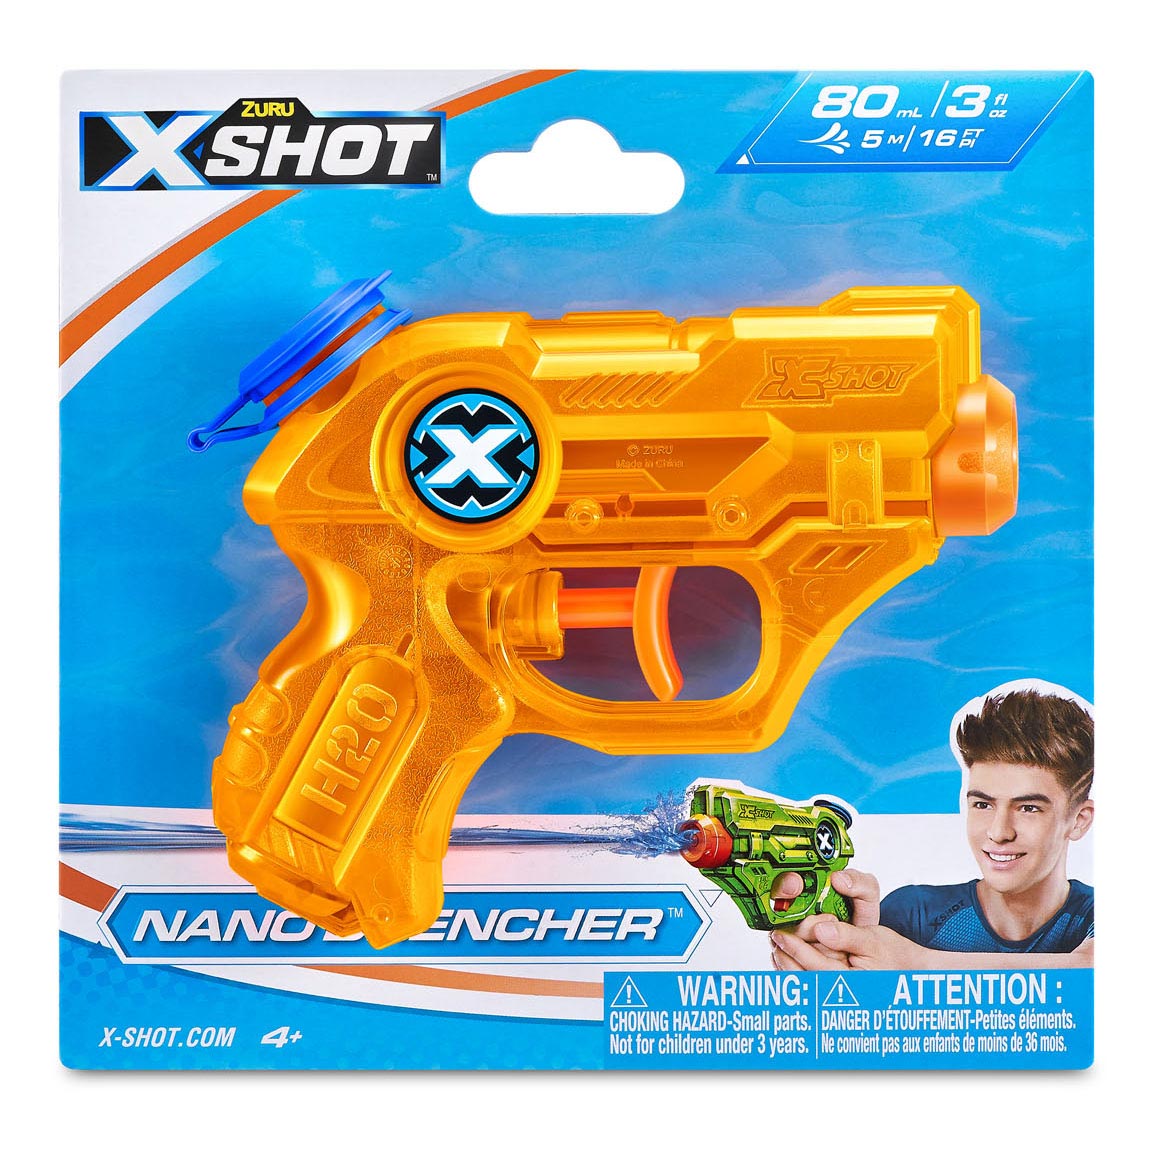 ZURU X-Shot Wasserpistole Nano Bencher, 80 ml